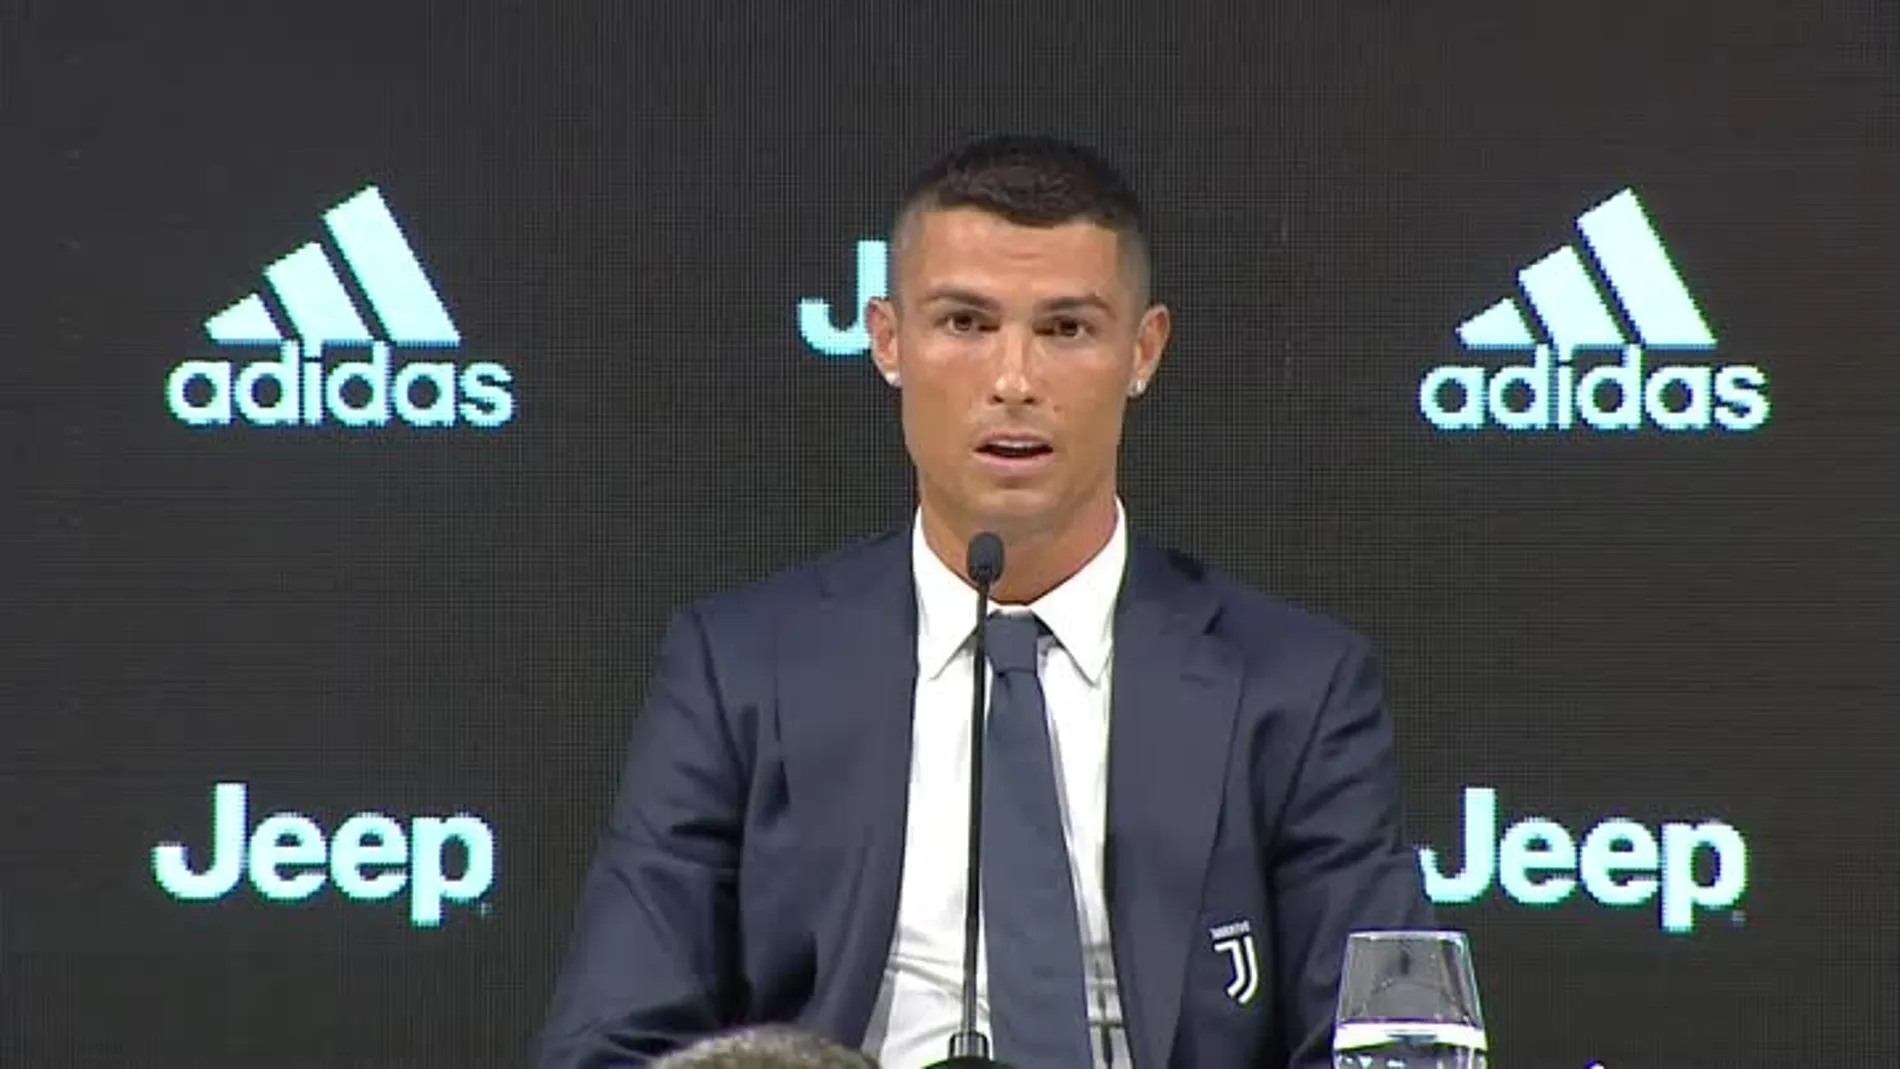 Cristiano Ronaldo, en su presentación con la Juventus